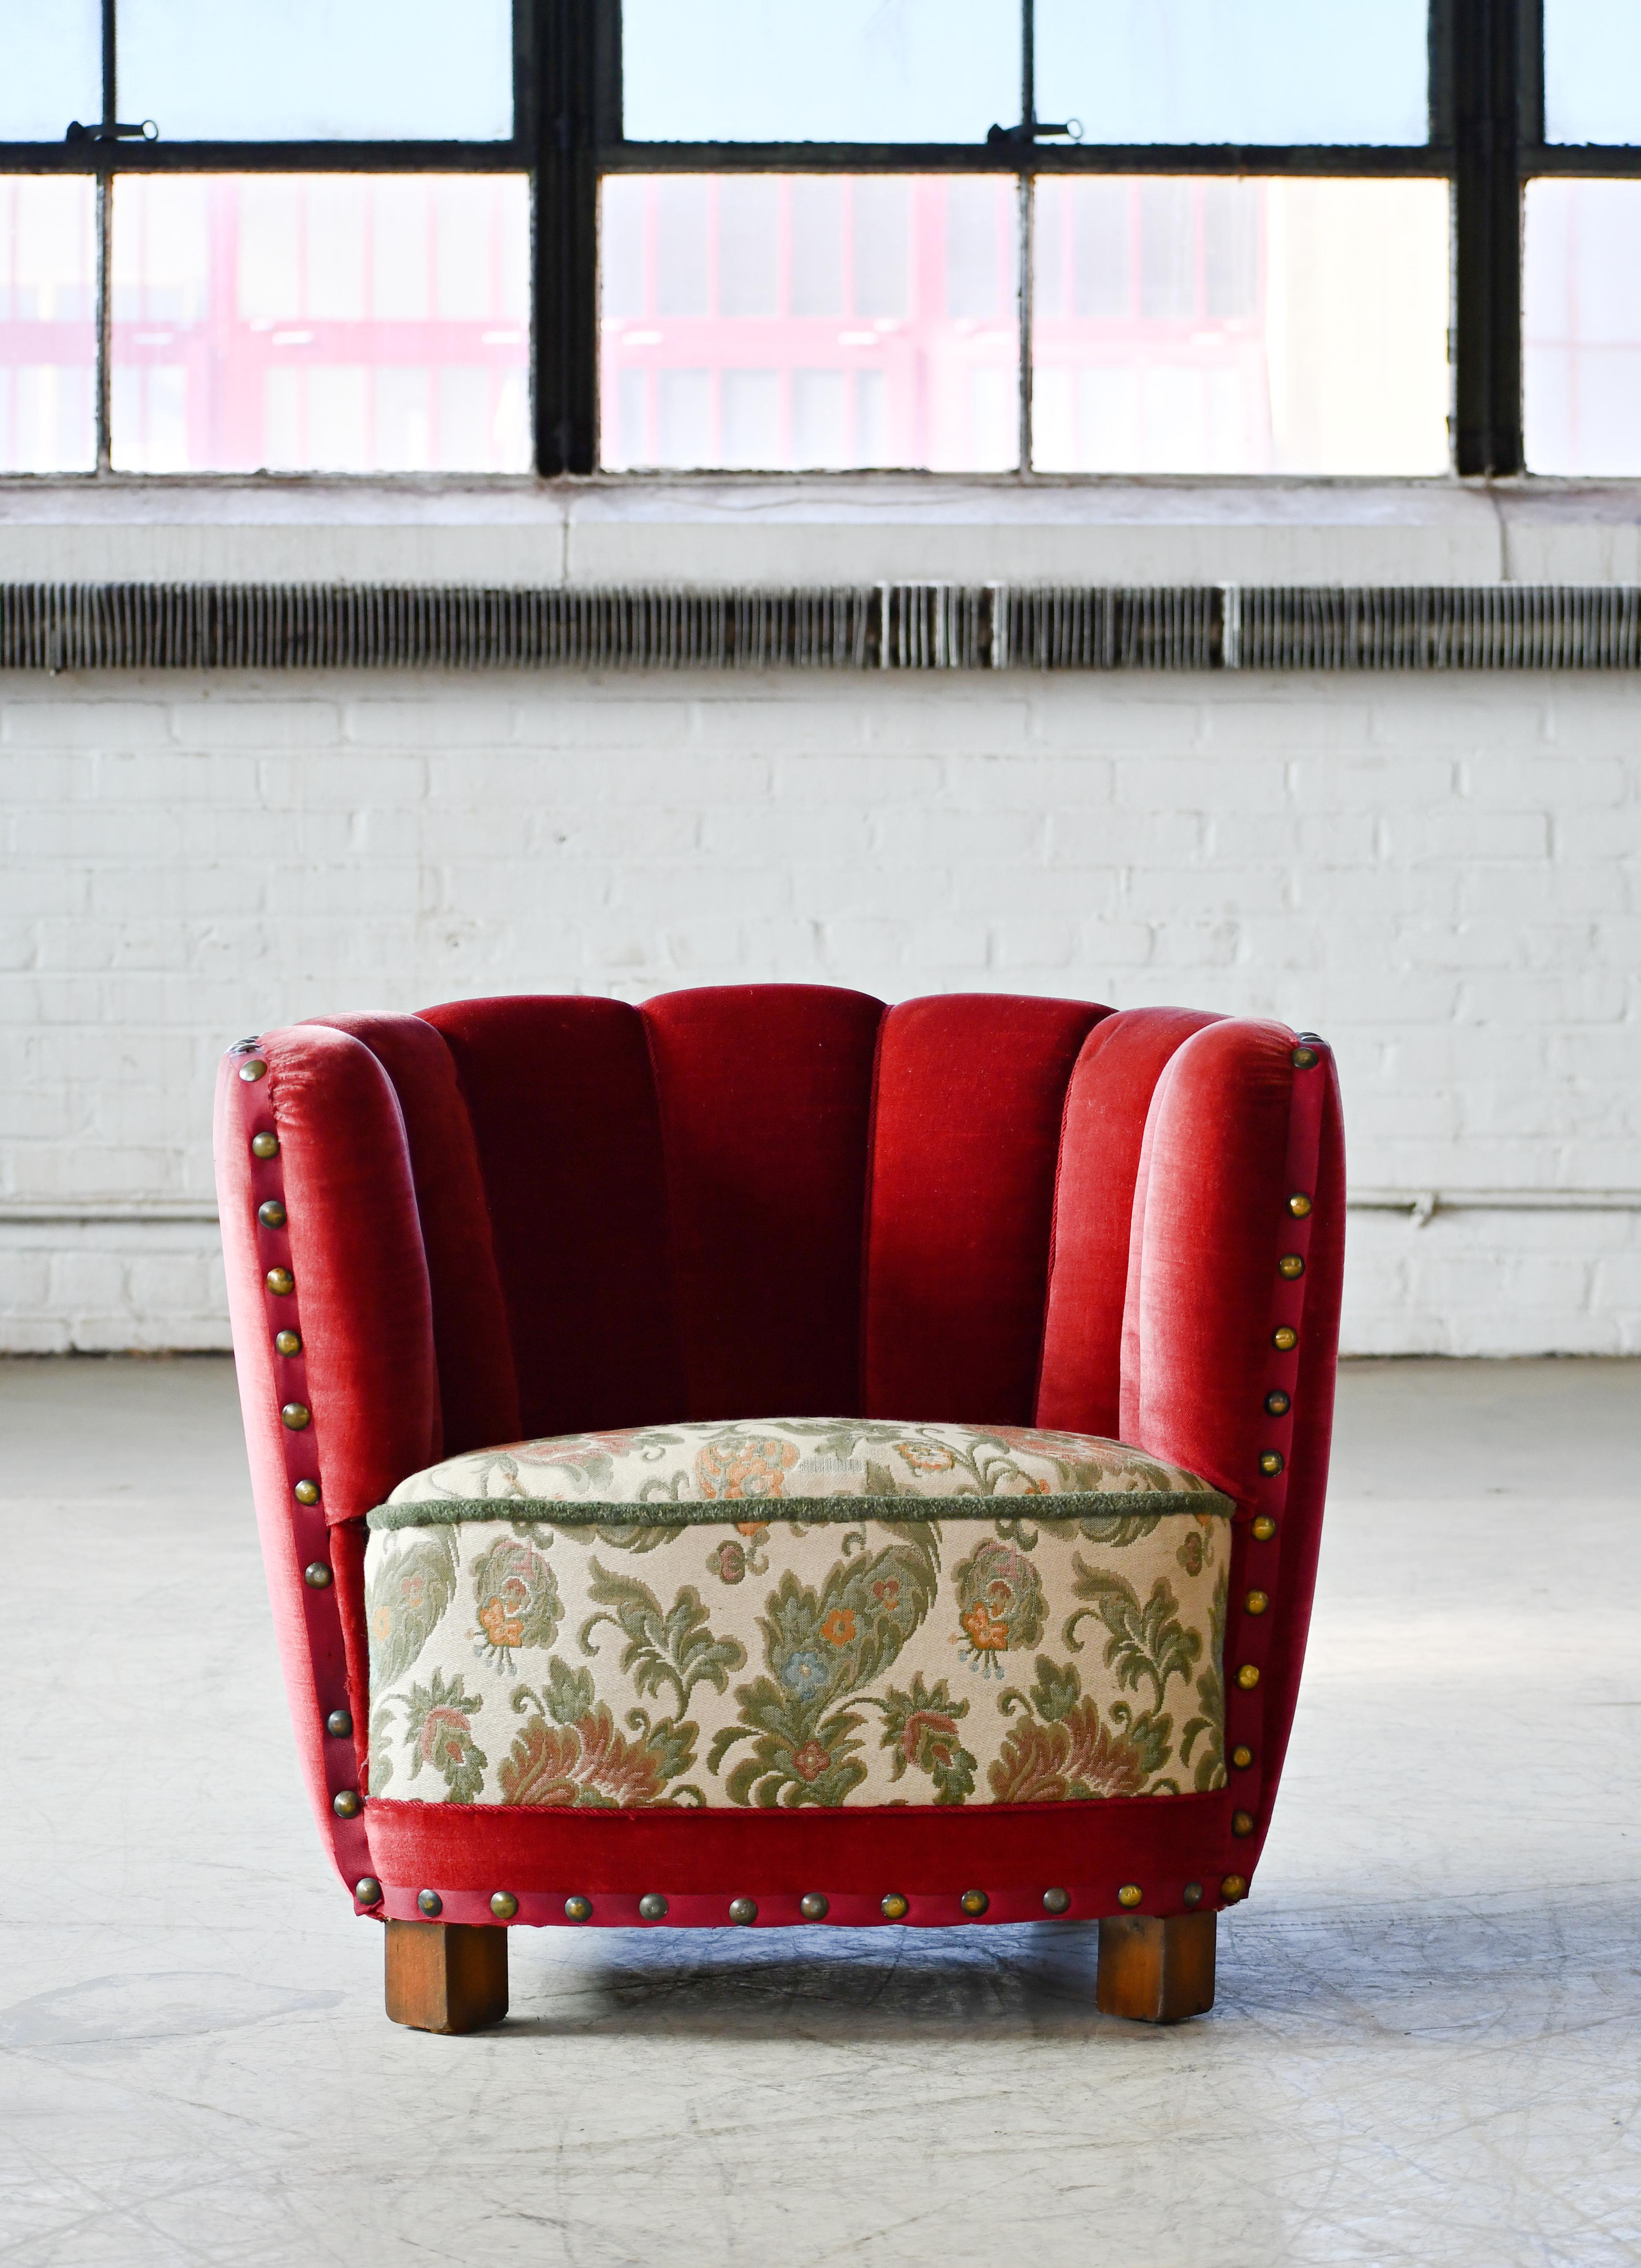 Dieser bequeme, üppige und hervorragend verarbeitete Stuhl fängt perfekt die Essenz des dänischen Designs der 1940er Jahre ein, das aus der späten Art-Déco-Ära in die frühe Mitte des Jahrhunderts überging. Die geschwungenen Rückenlehnen und die tief